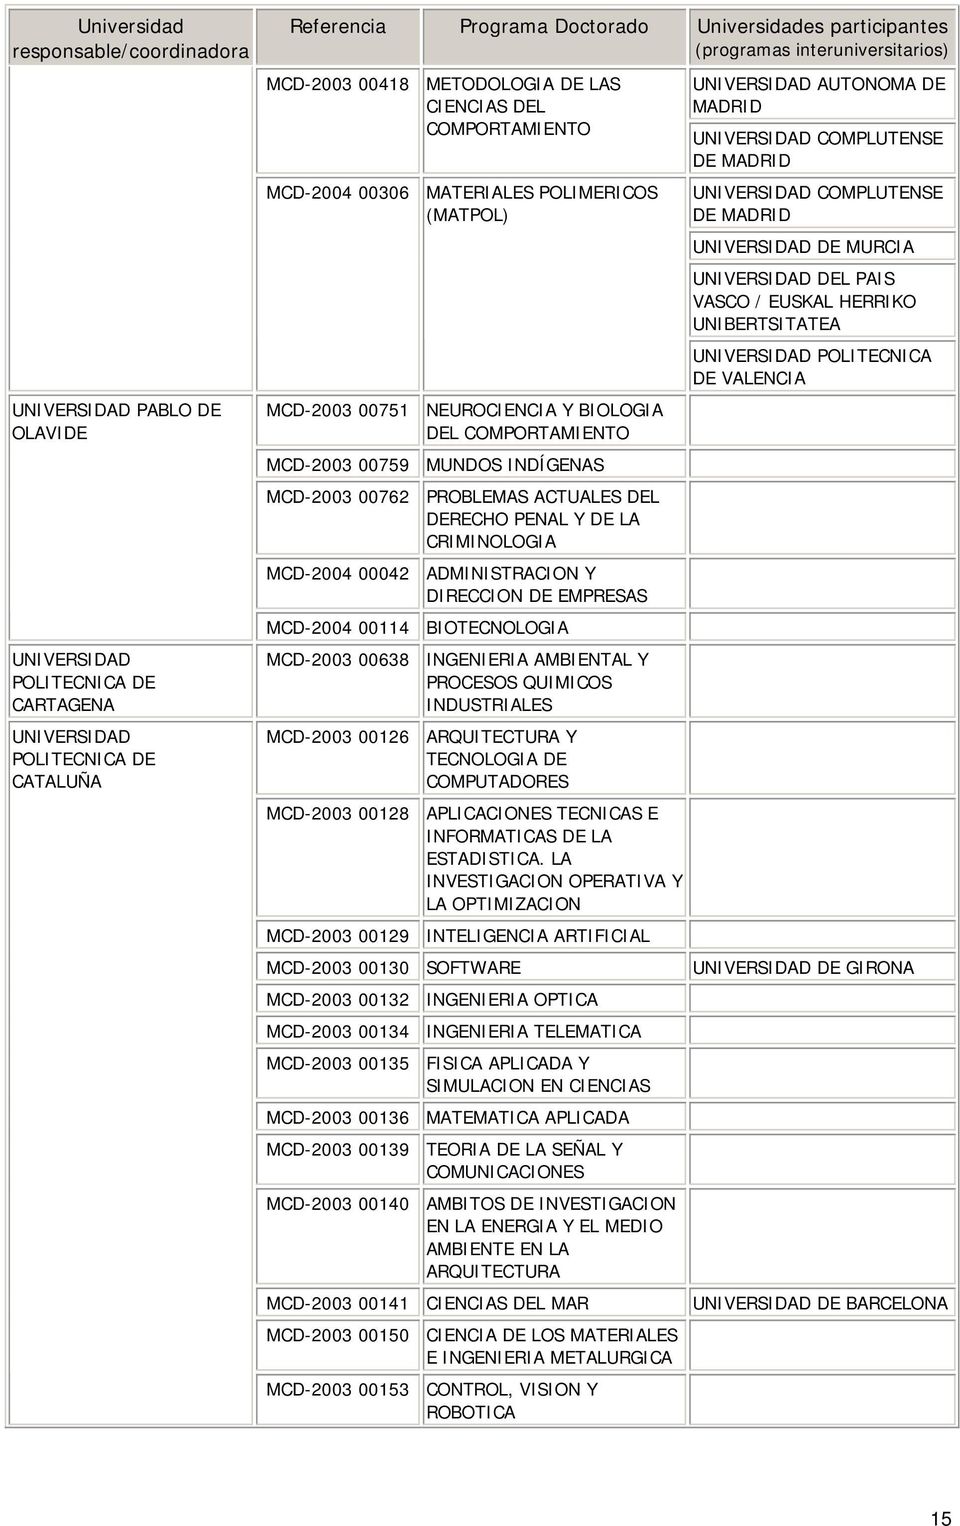 ADMINISTRACION Y DIRECCION DE EMPRESAS MCD-2004 00114 BIOTECNOLOGIA MCD-2003 00638 INGENIERIA AMBIENTAL Y PROCESOS QUIMICOS INDUSTRIALES MCD-2003 00126 ARQUITECTURA Y TECNOLOGIA DE COMPUTADORES